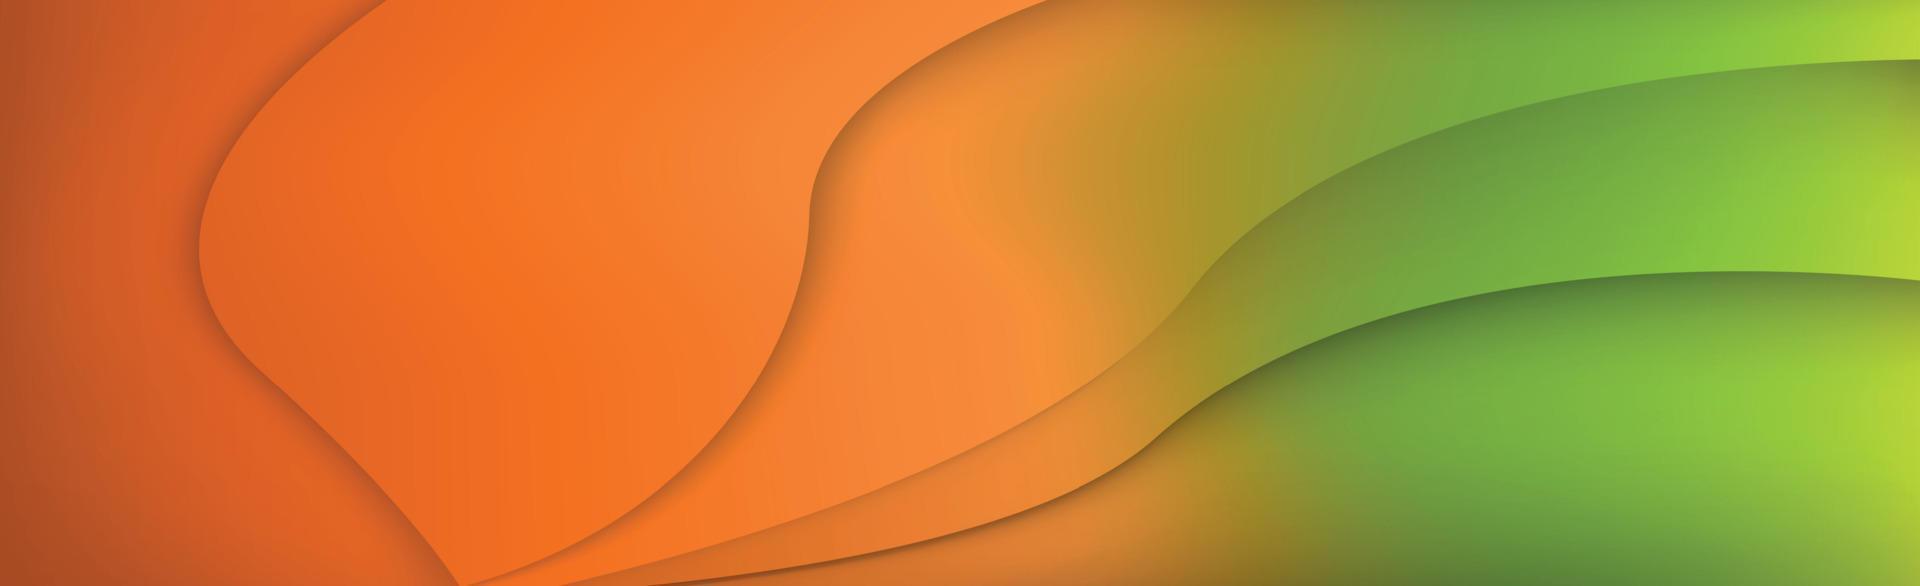 Fondo web abstracto panorámico degradado rojo naranja - vector